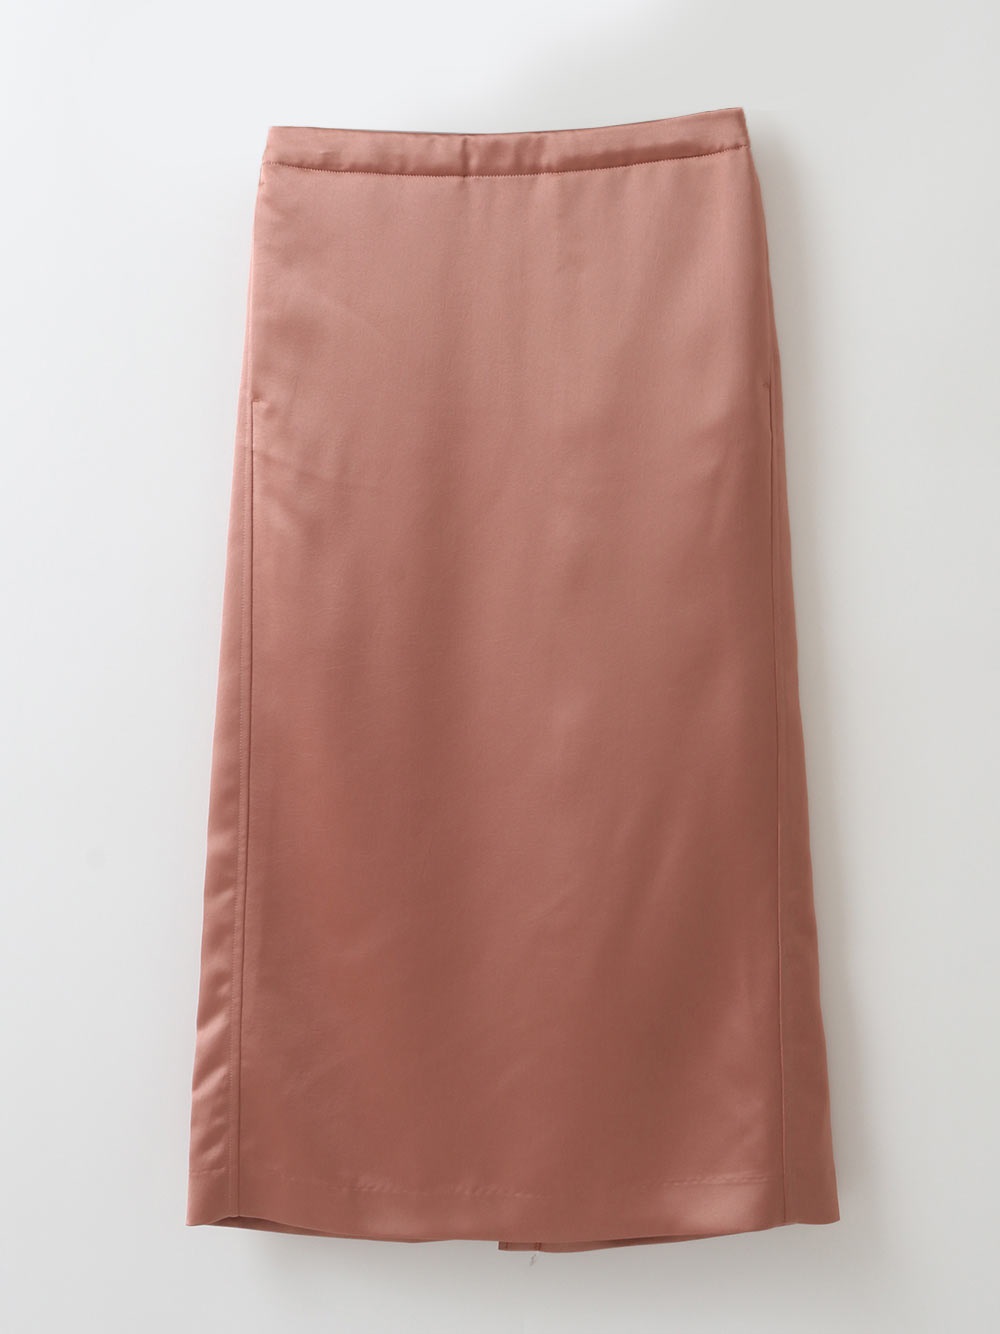 Satin Skirt(32ピンク-フリー)